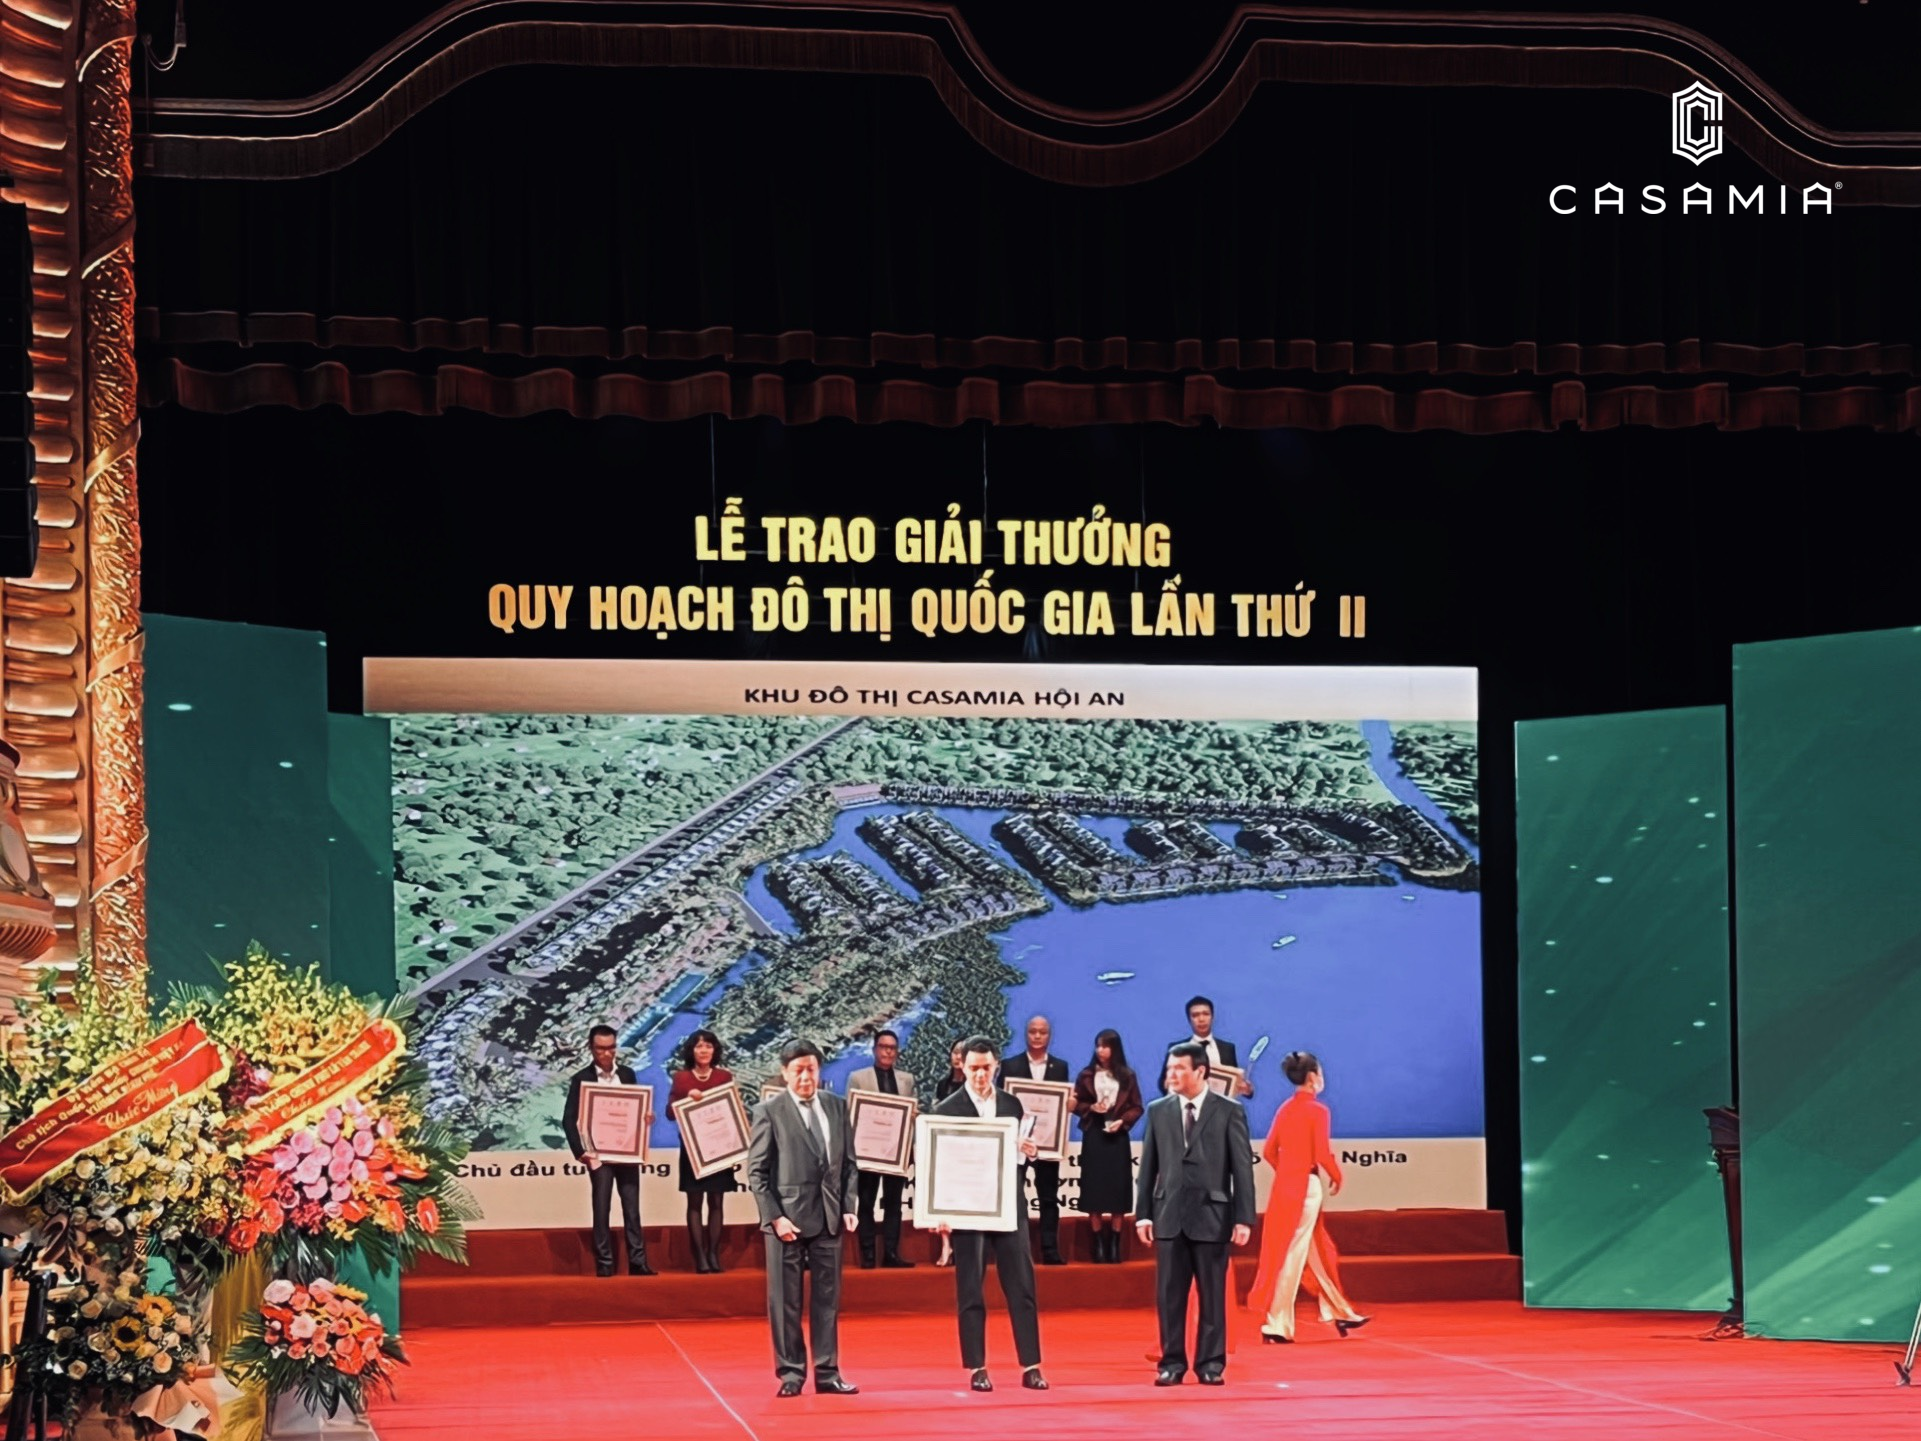 Chủ đầu tư Đạt Phương tiếp tục vinh dự nhận Giải thưởng Quy hoạch Đô thị quốc gia năm 2021.